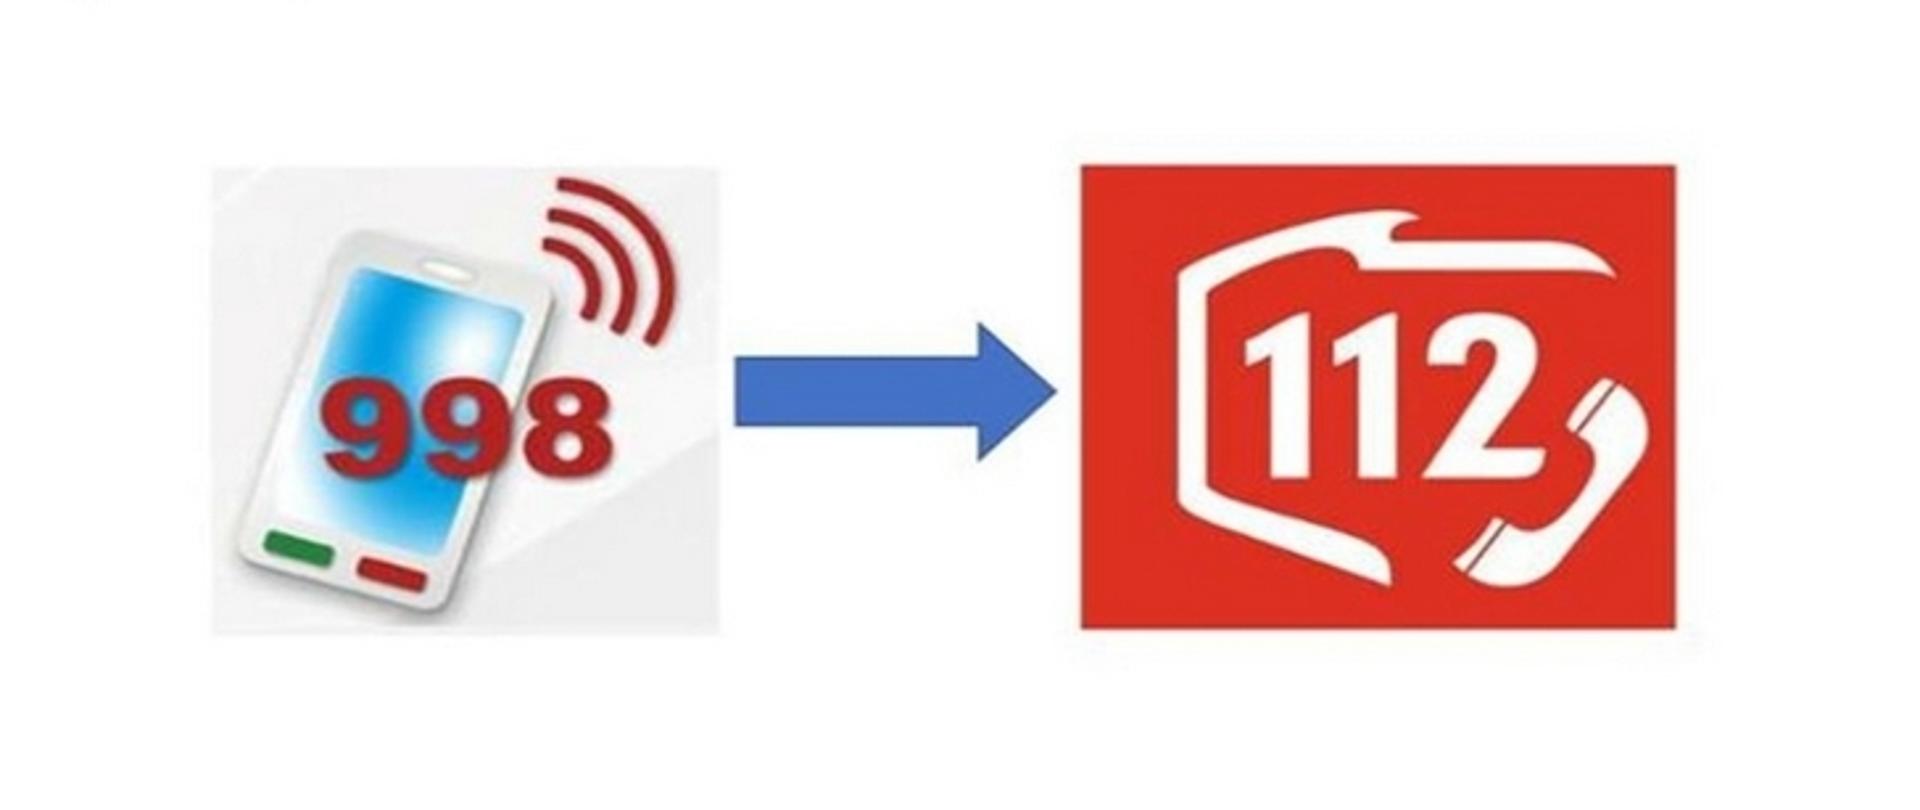 Zdjęcie stanowi kolorową grafikę, na której widnieje z lewej strony symbol telefonu komórkowego, a przed nim numer 998. Z prawej strony biało-czerwona grafika z numerem 112.